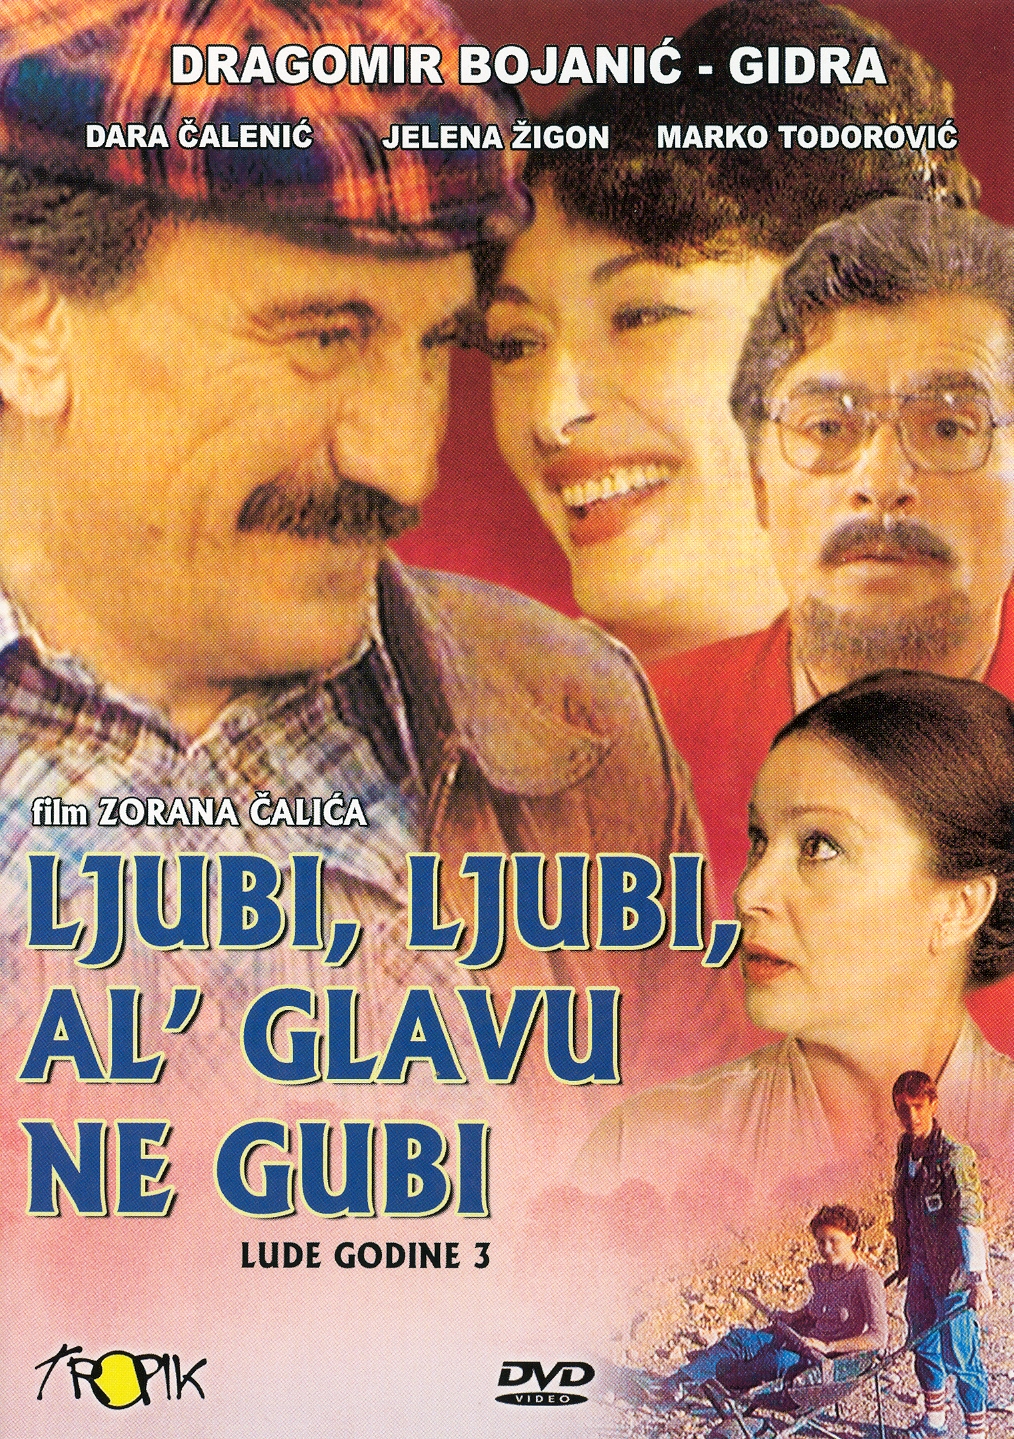  فیلم سینمایی Ljubi, ljubi, al' glavu ne gubi به کارگردانی Zoran Calic